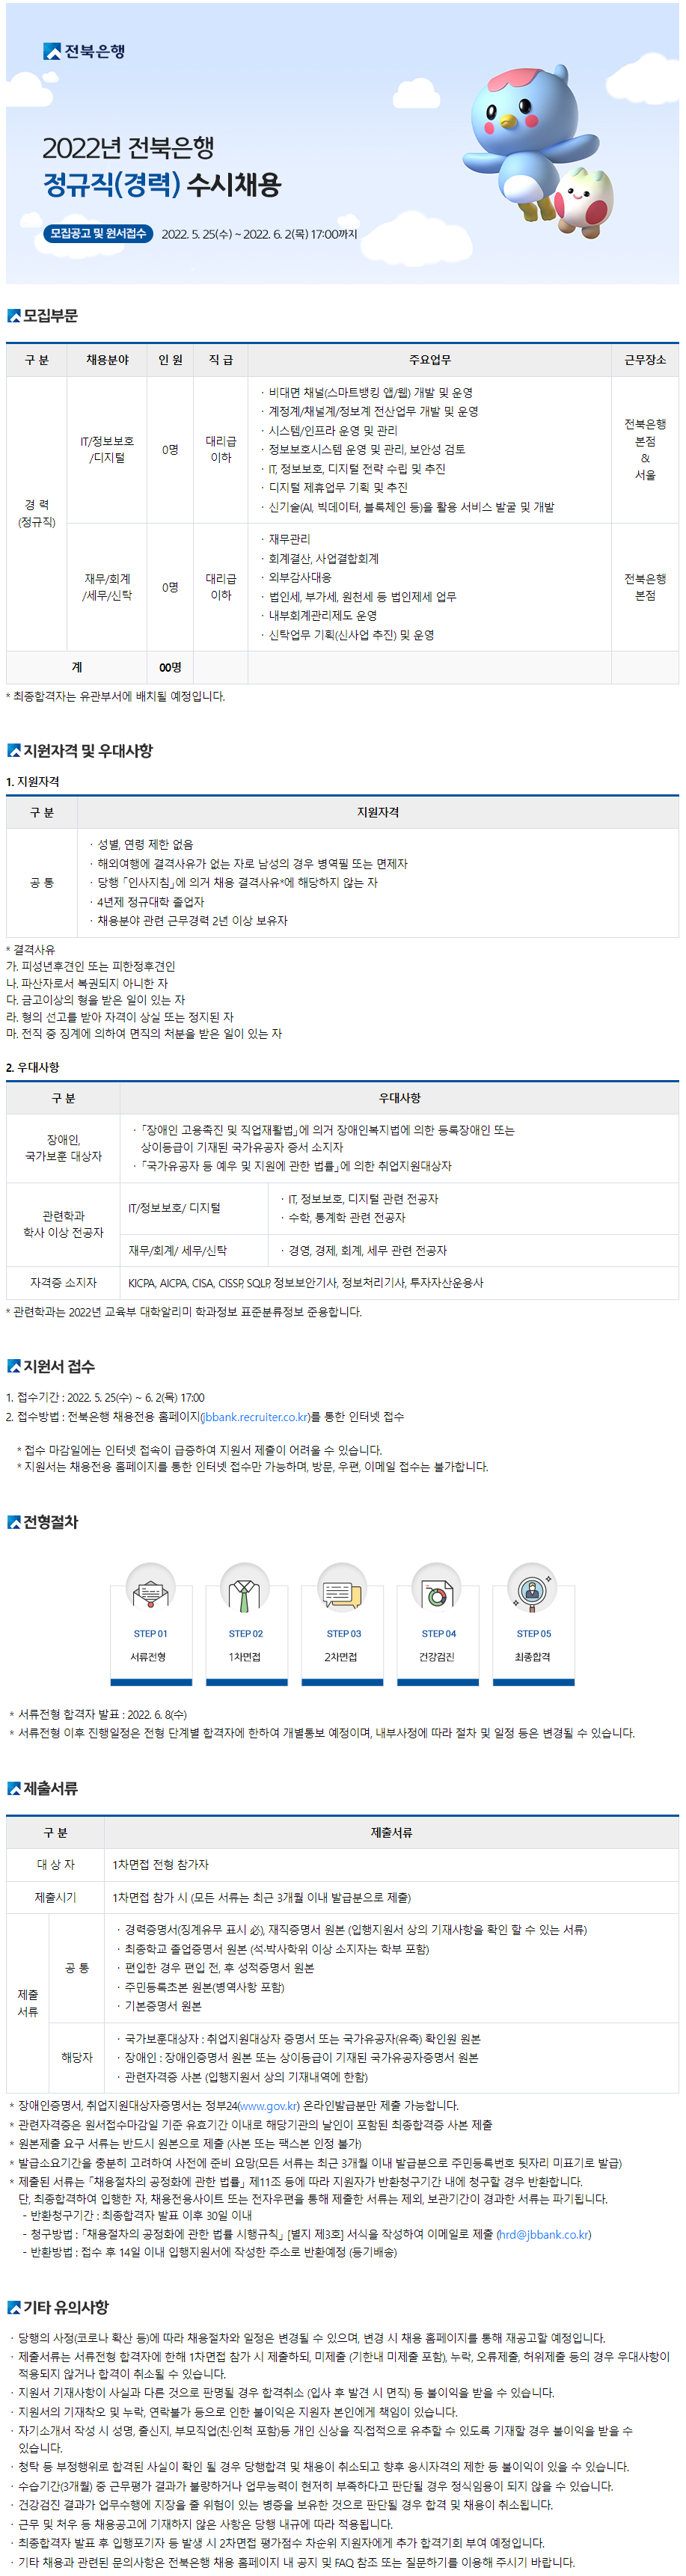 전북은행 공고문 - 20220524-01.png